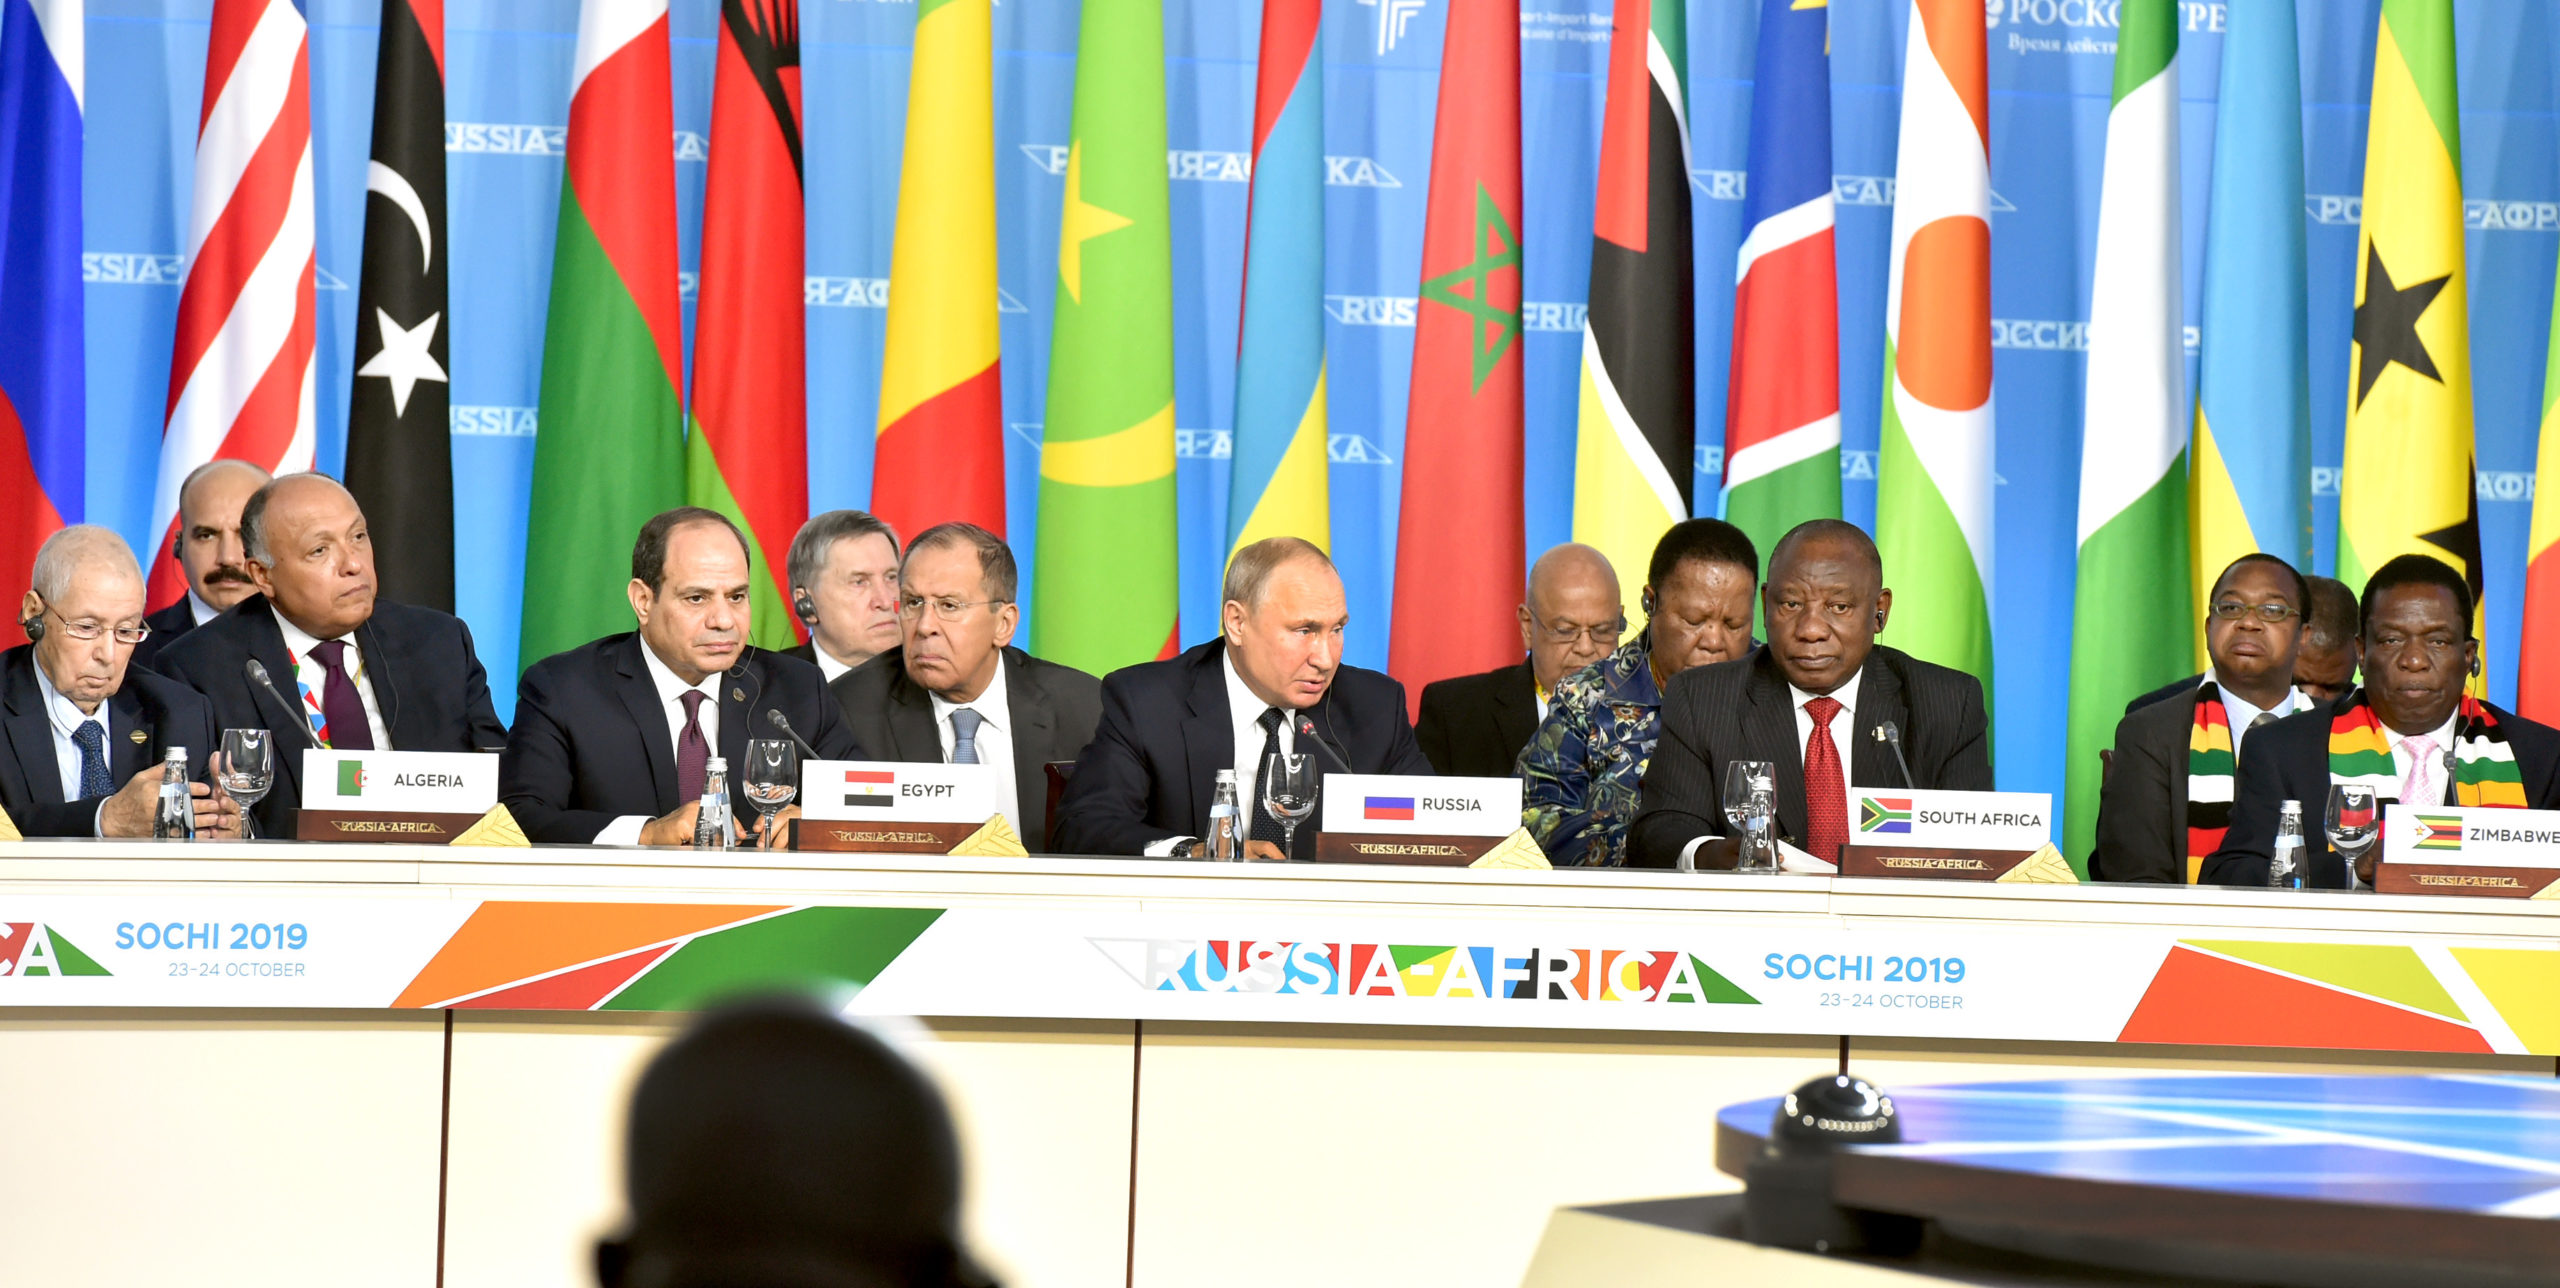 Et panel kalt Russia-Africa hvor vi blant annet ser Putin og flere afrikanske statsledere